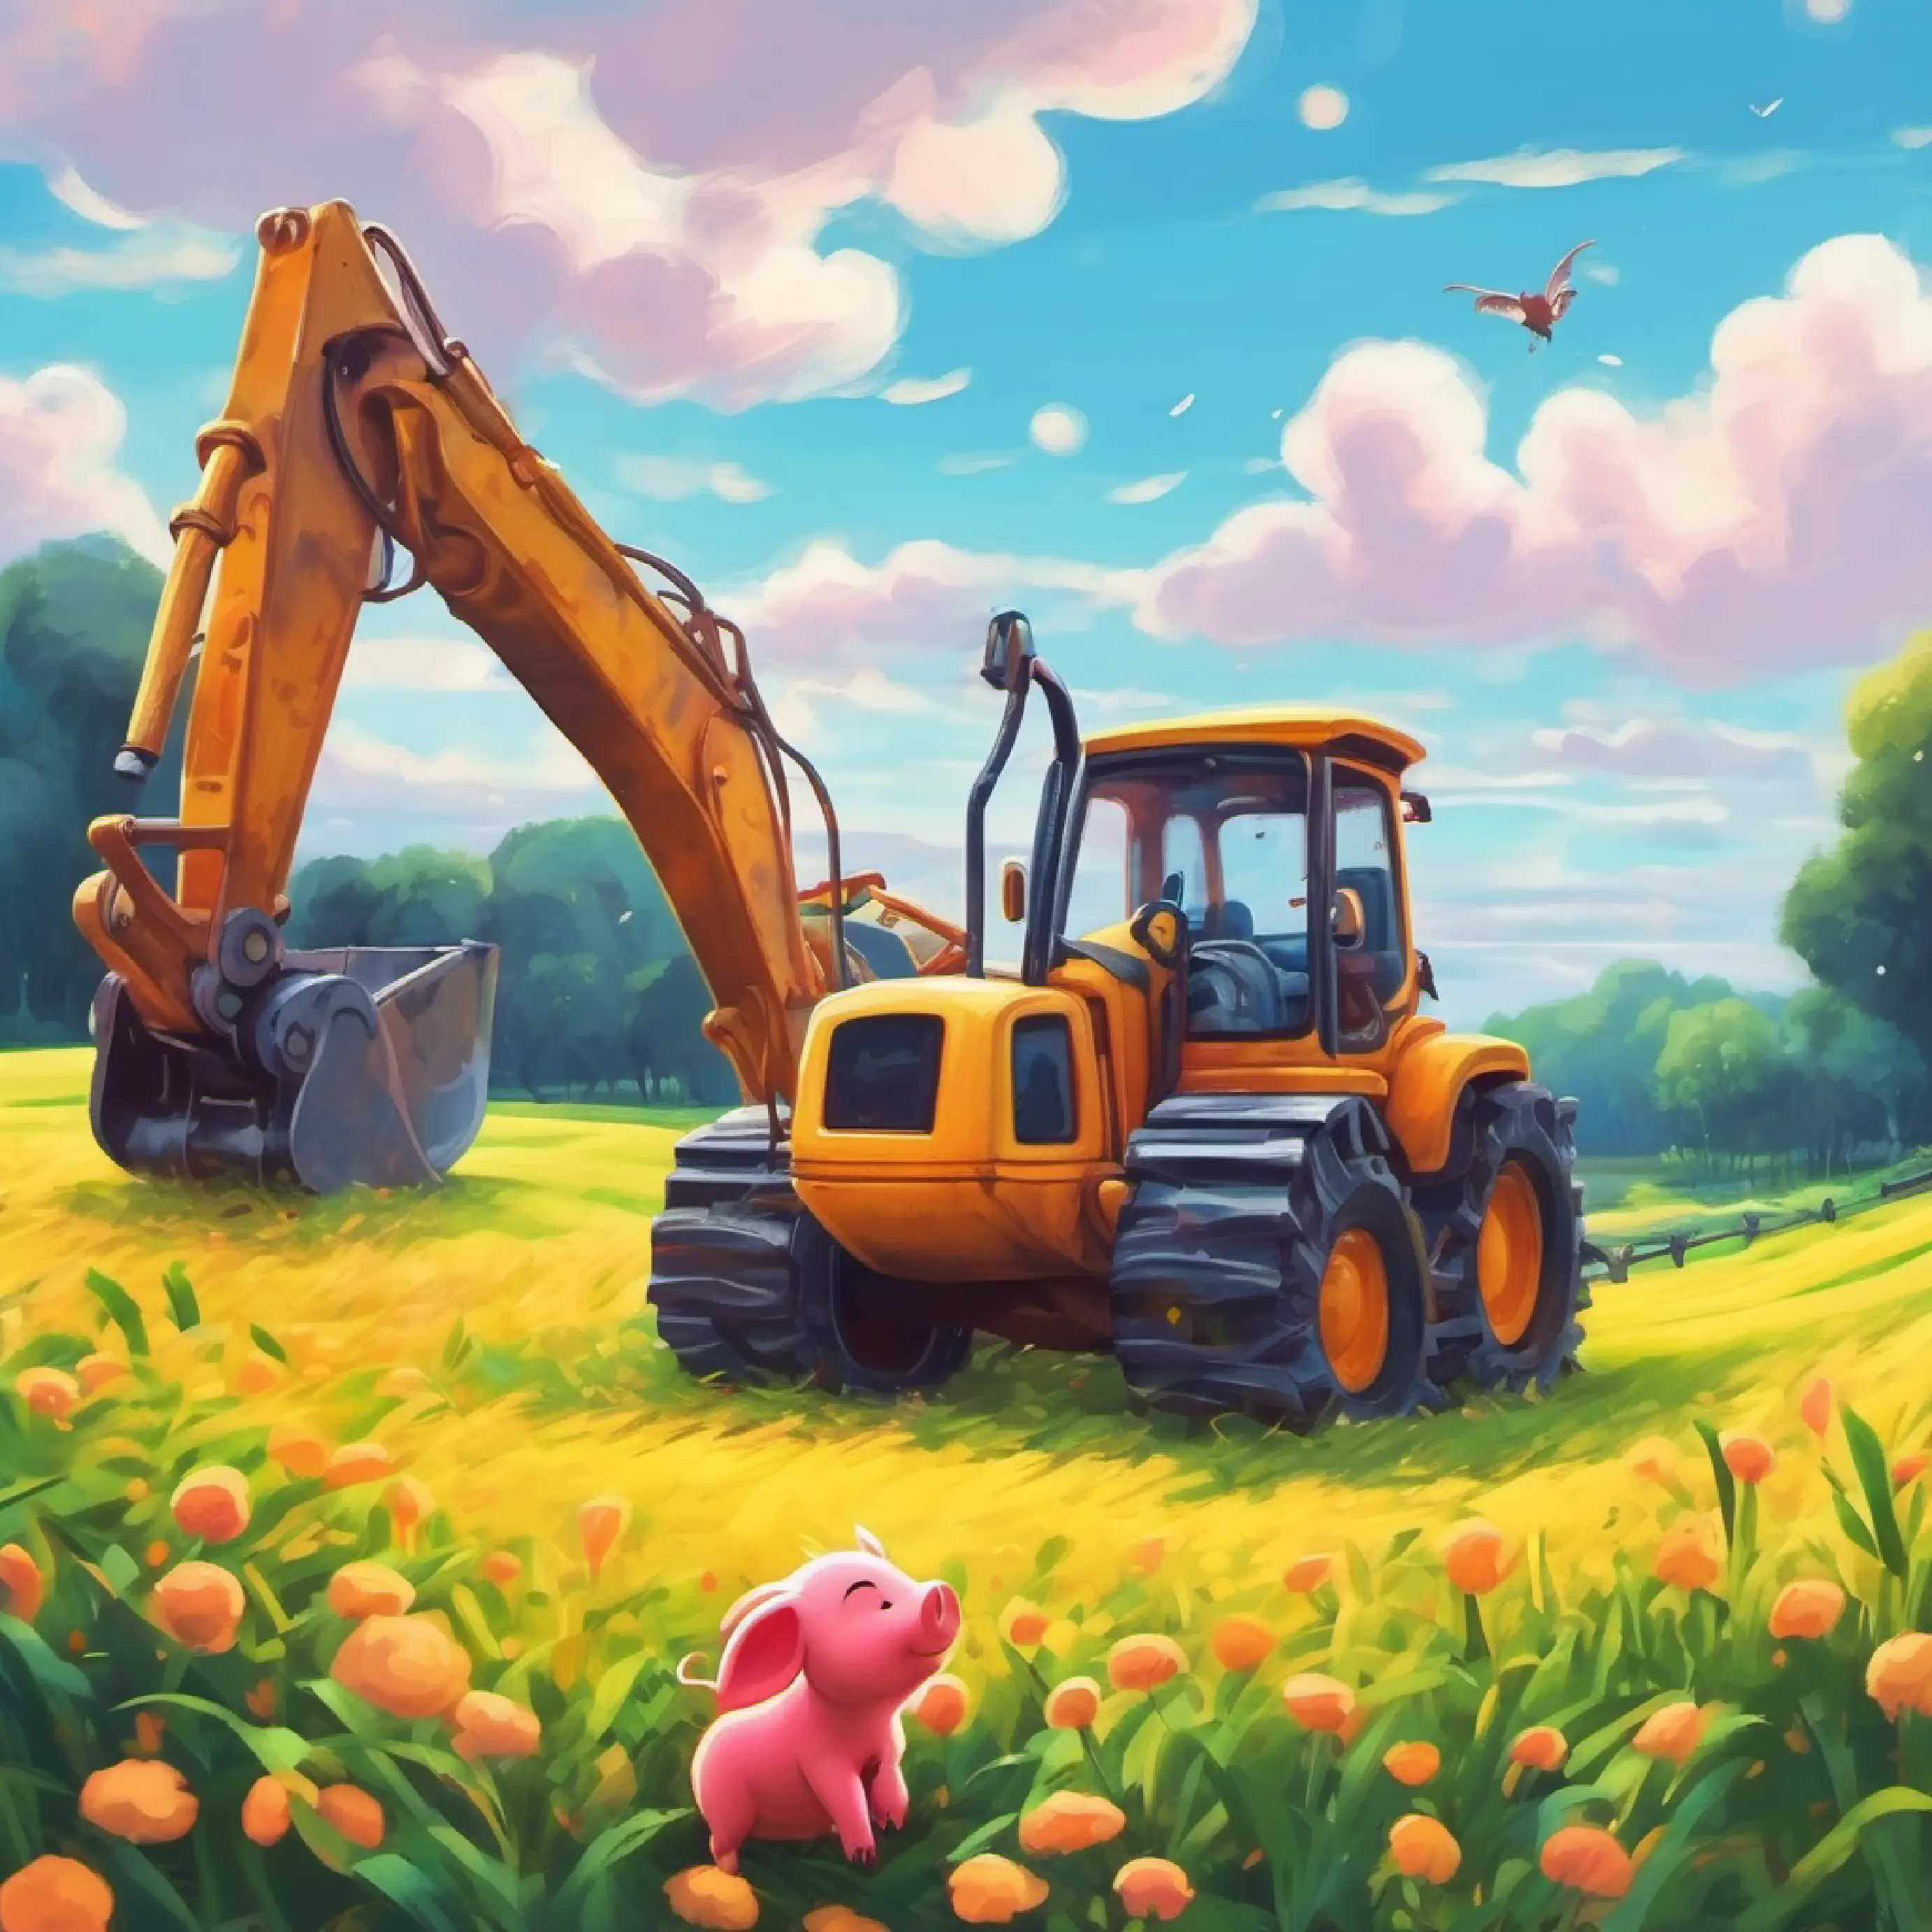 Piglet meets a quiet Excavator in a field.